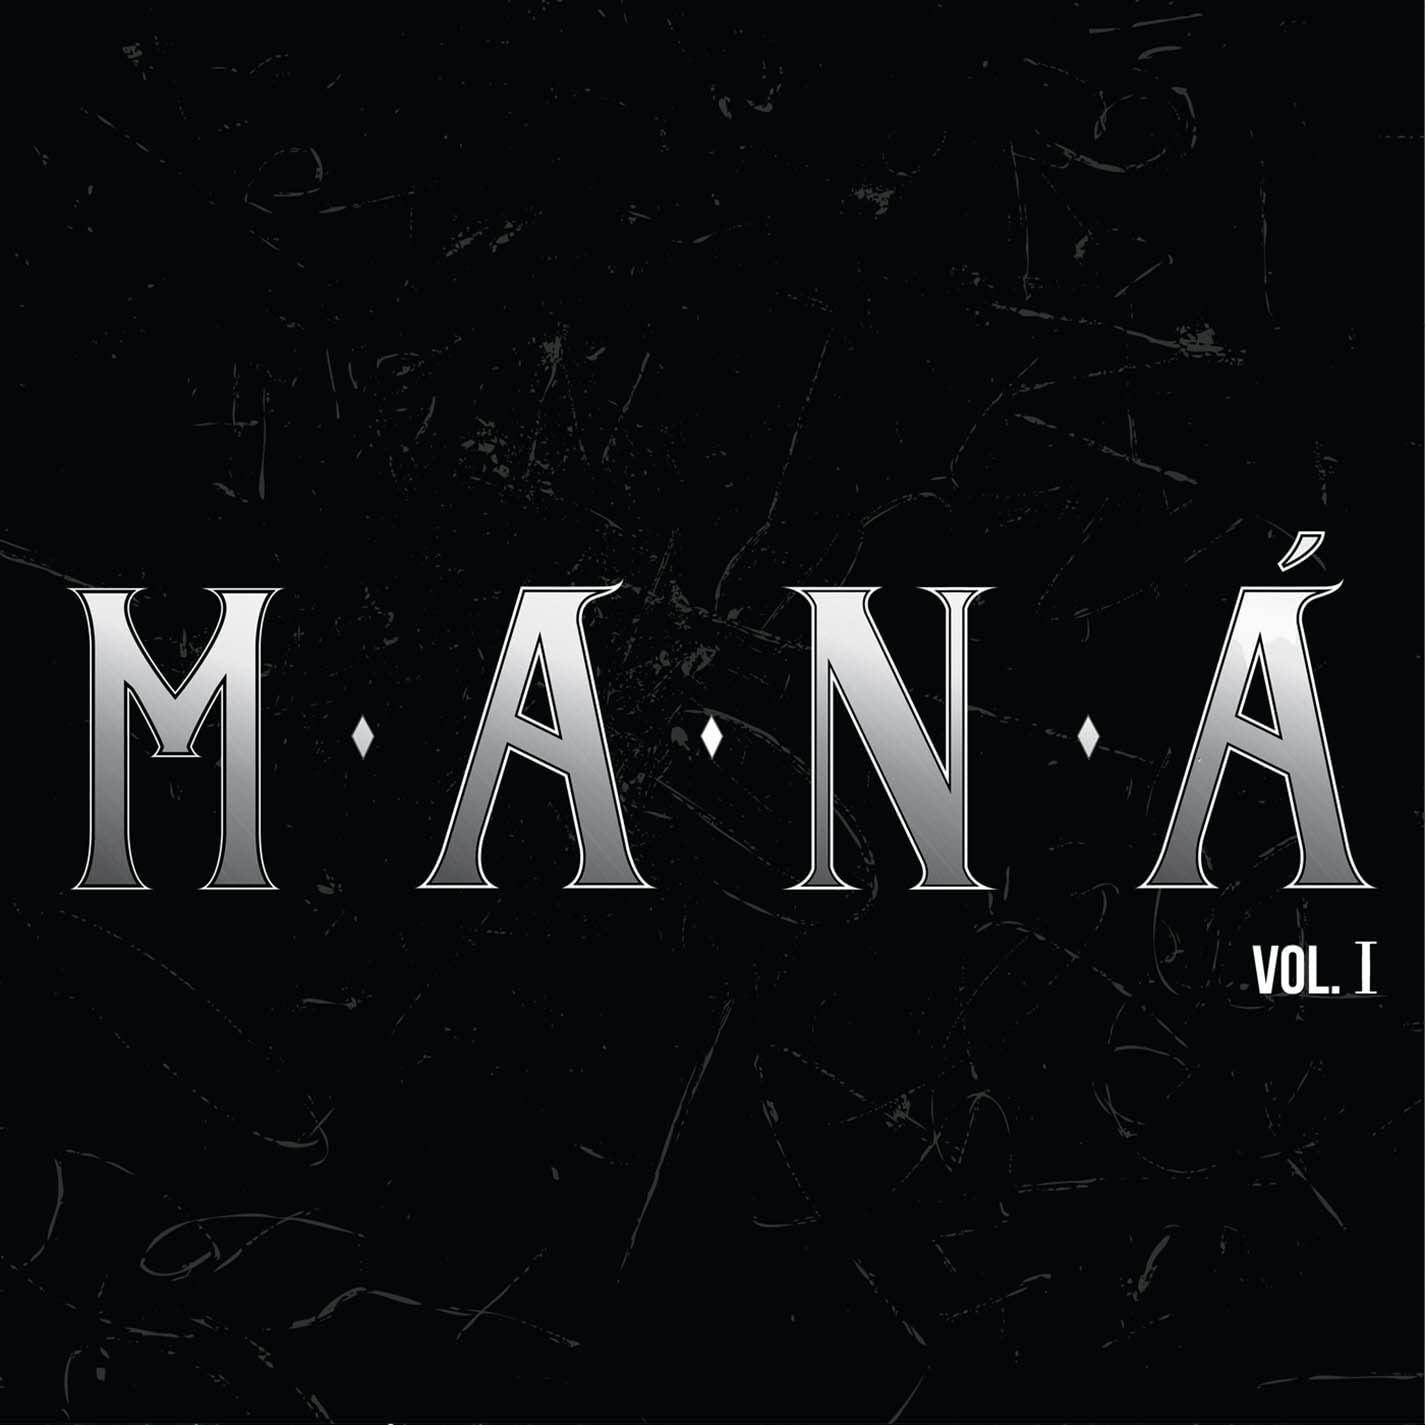 Maná - Maná Remastered Vol. 1 (Limited Special Edition, Remastered, Box Set) (5 LP) - Joco Records